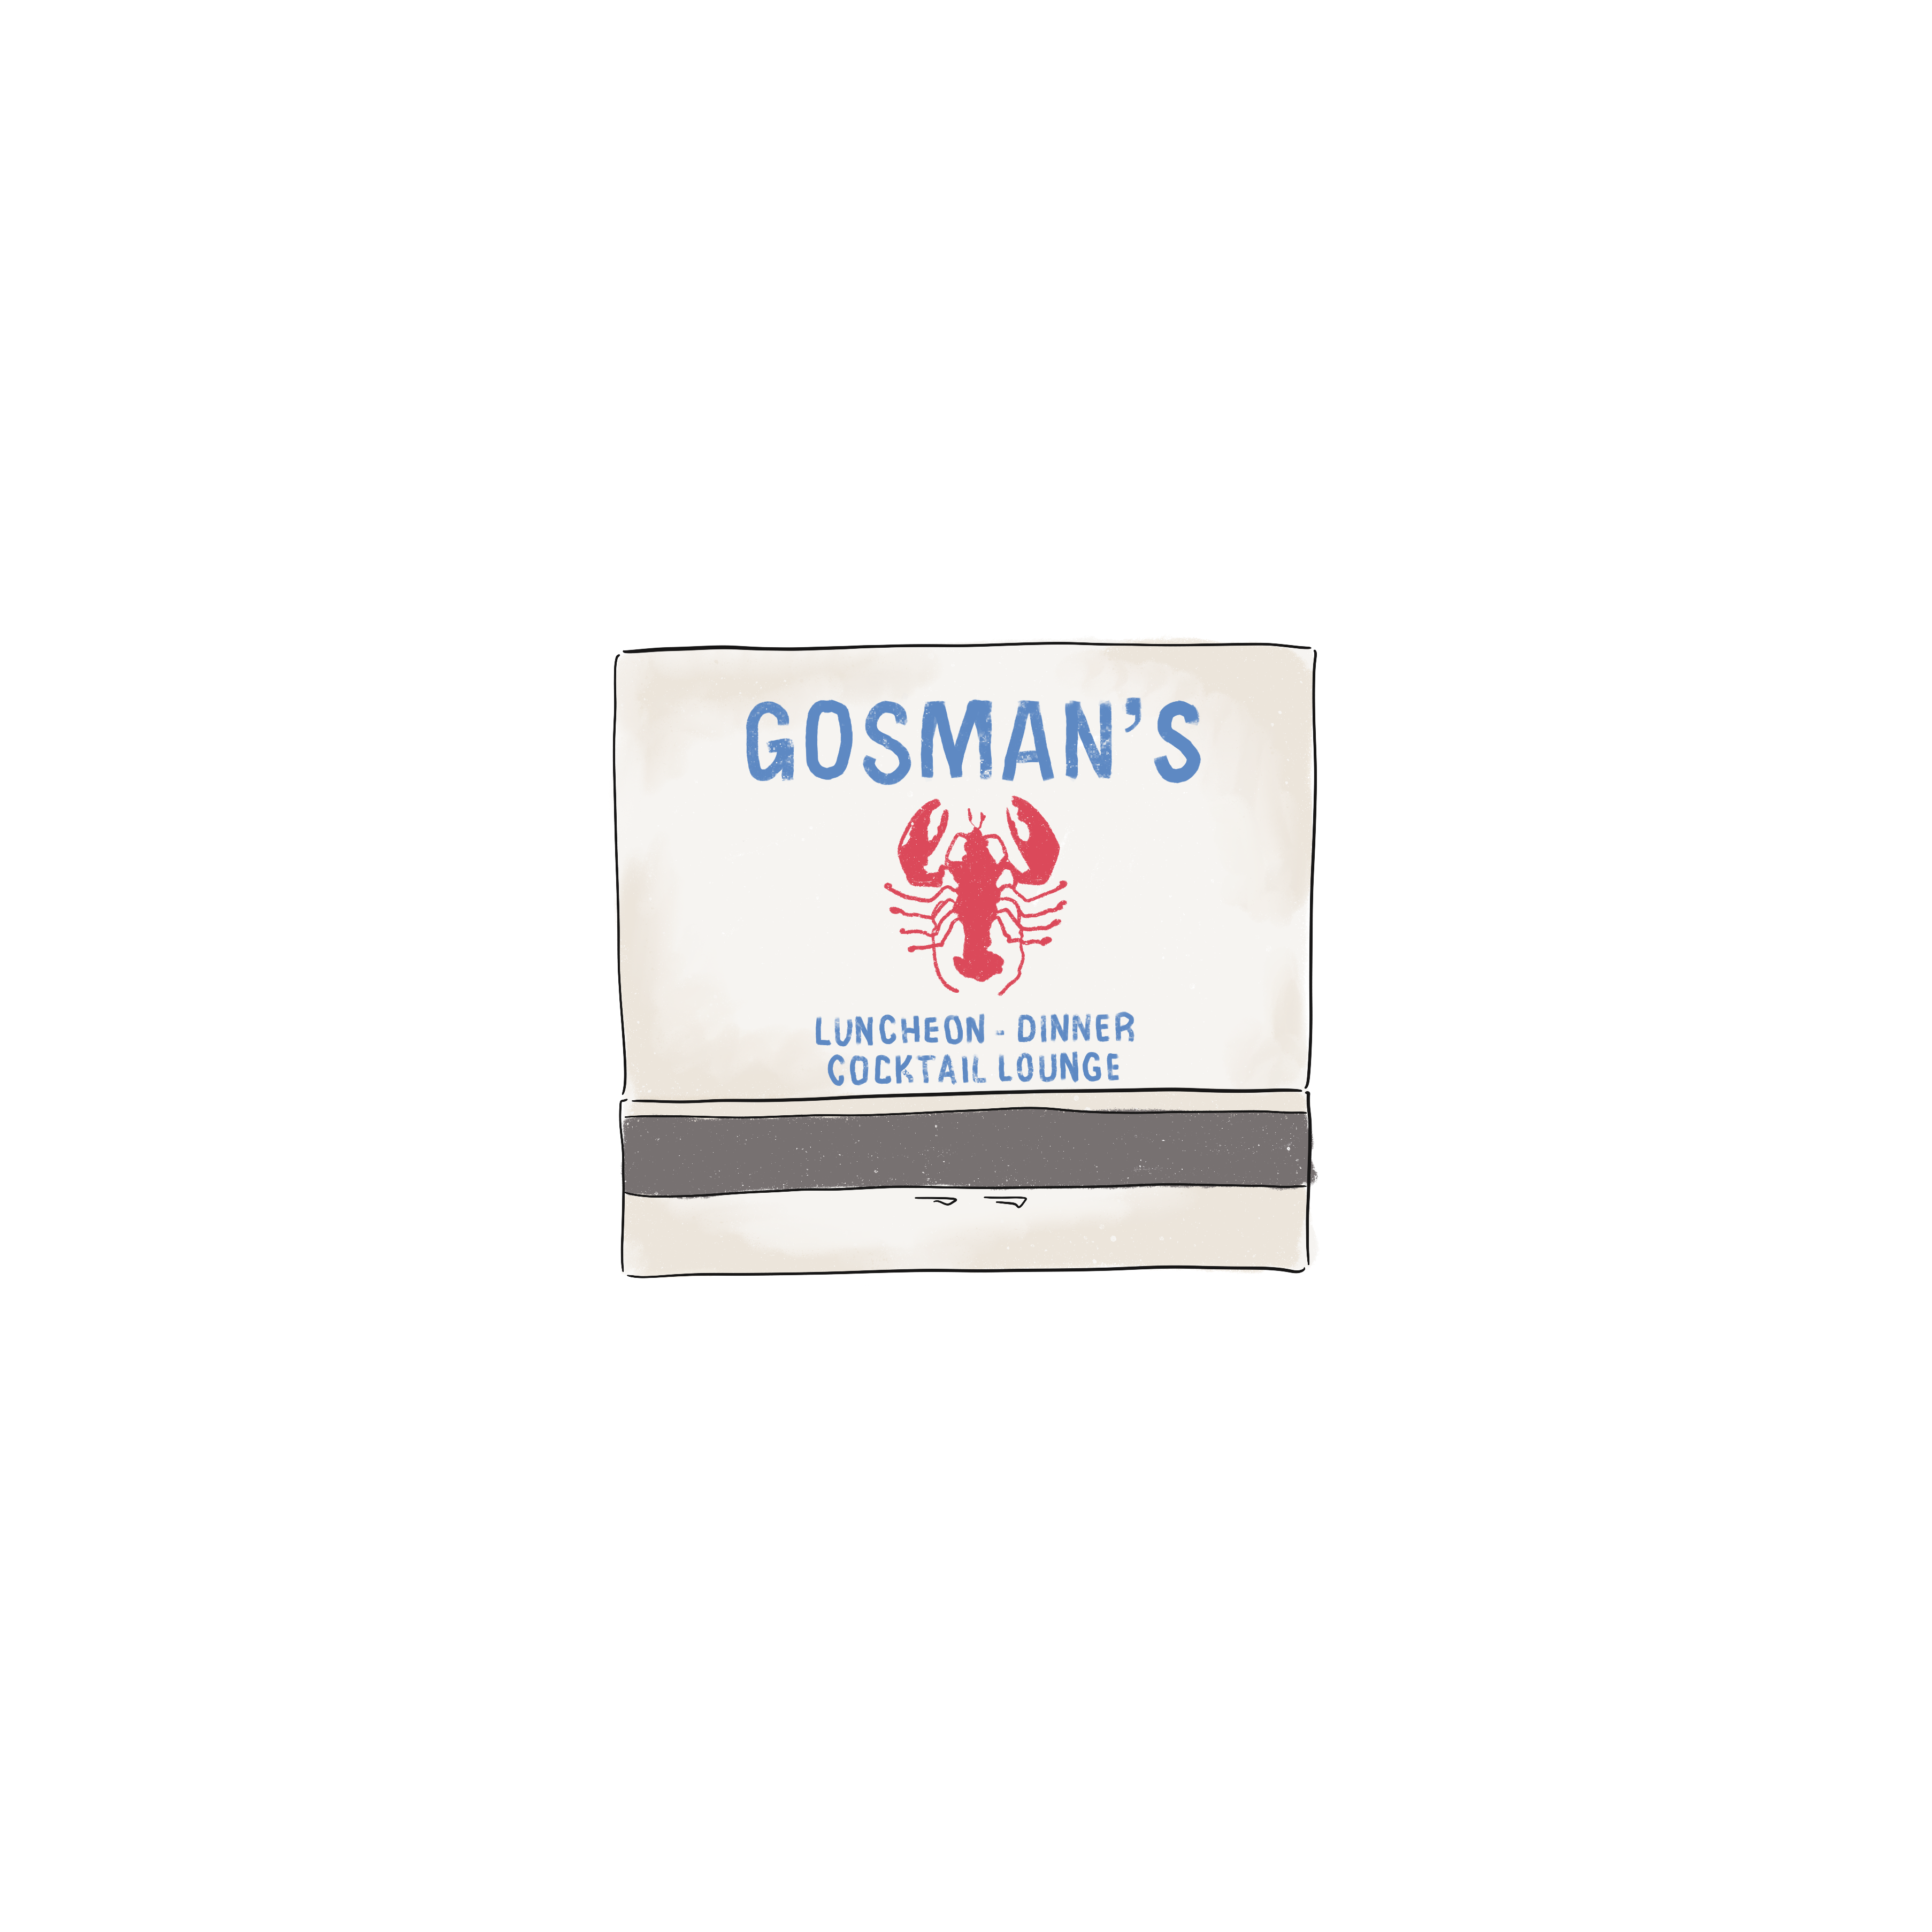 Gosman's Matchbook